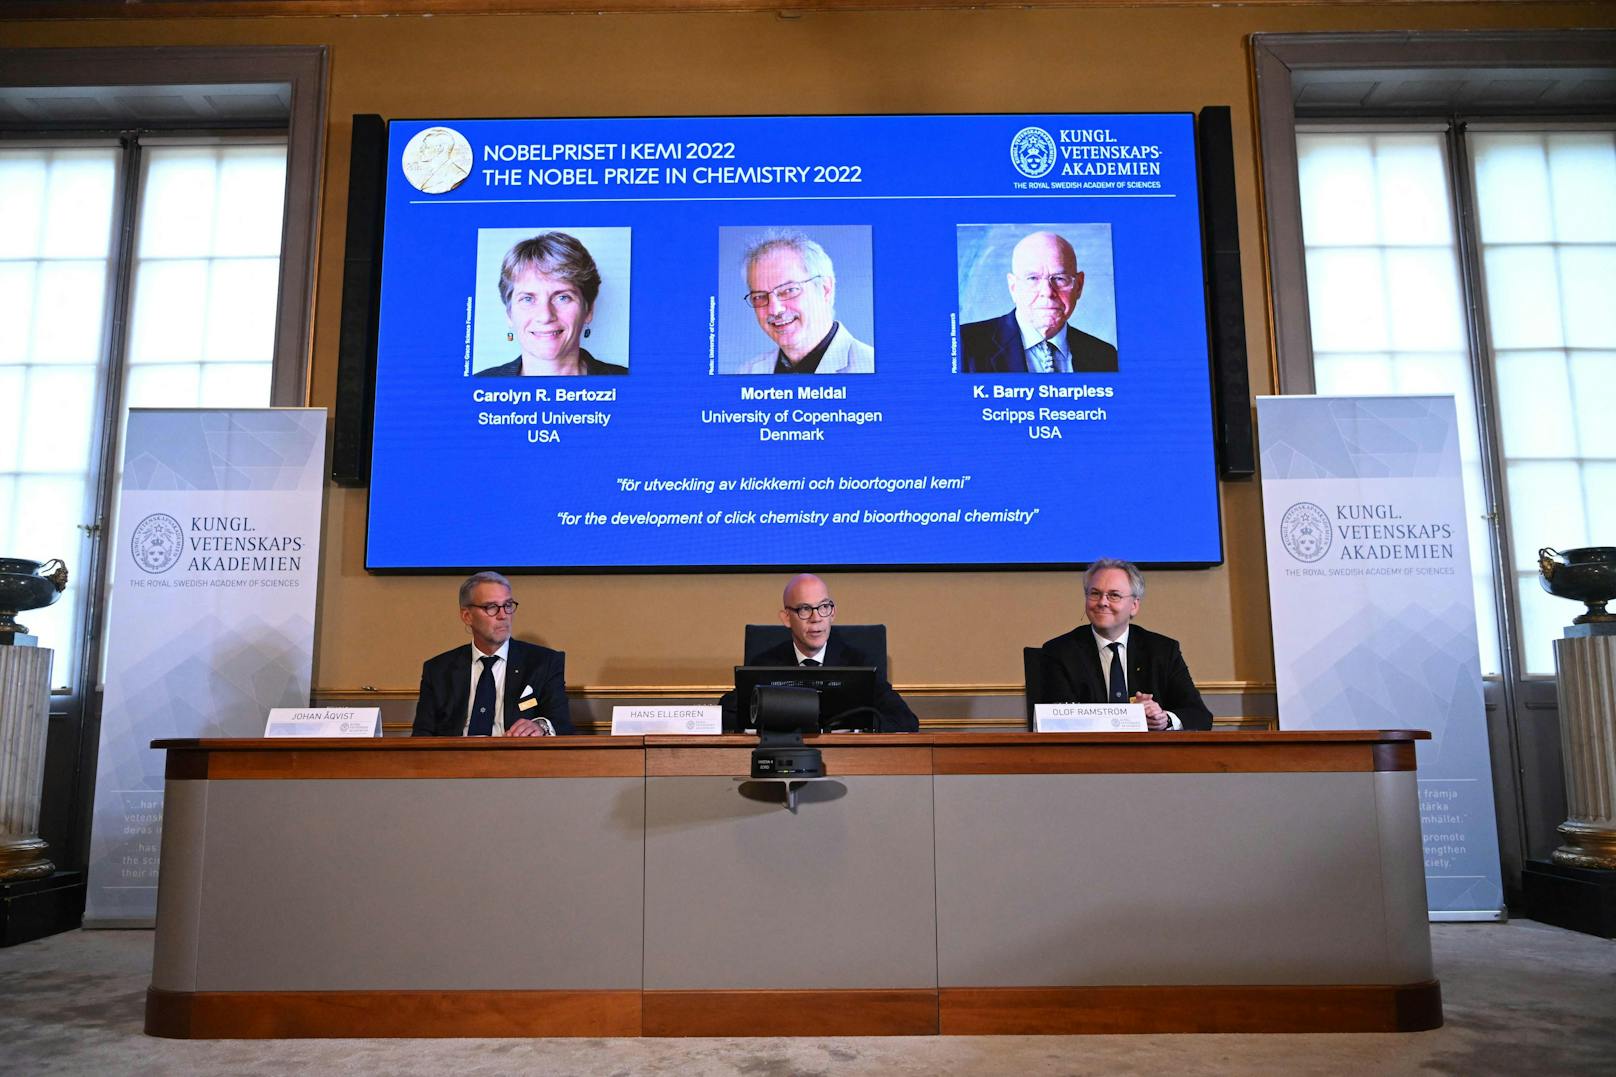 Carolyn R. Bertozzi (USA), Morten Meldal (Dänemark) und K. Barry Sharpless (USA) erhielten den Nobelpreis für Chemie.